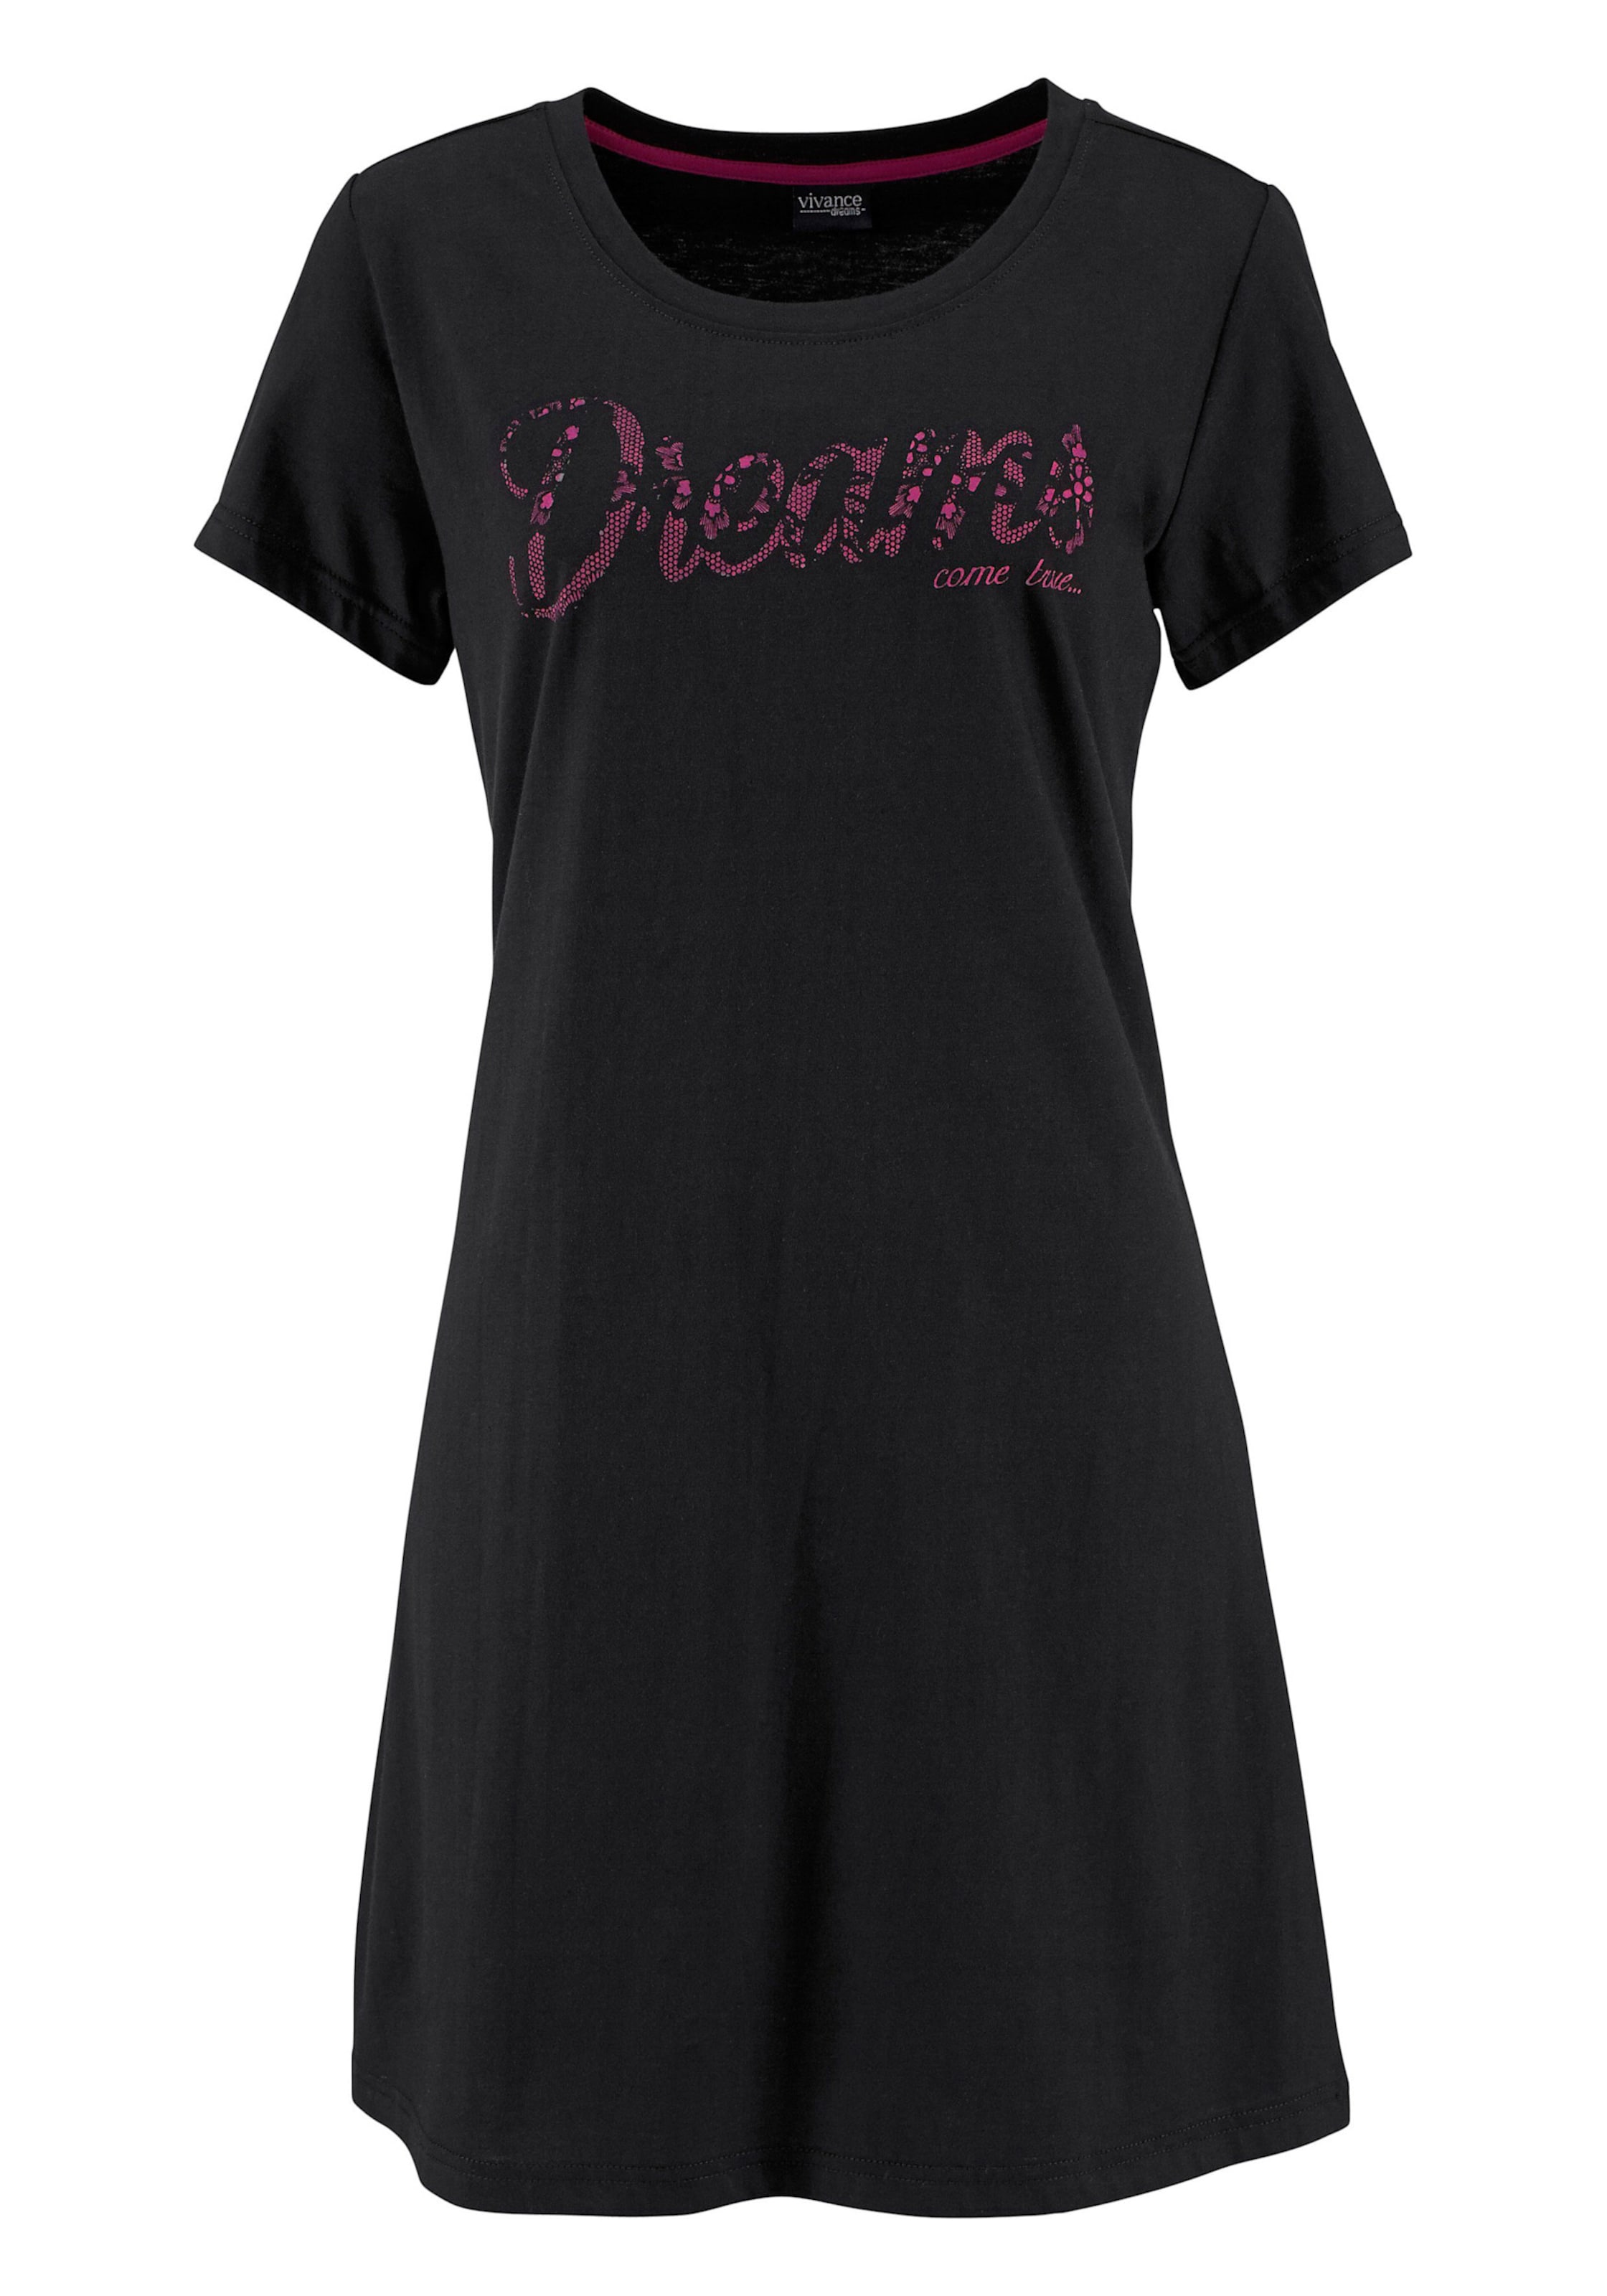 Spitze von günstig Kaufen-Sleepshirt in pink, schwarz von Vivance Dreams. Sleepshirt in pink, schwarz von Vivance Dreams <![CDATA[Modischer Kurz-Style mit Rundhalsausschnitt, kurzen Ärmeln und Frontdruck in Spitzen-Optik. Single-Jersey aus 100% Baumwolle.]]>. 